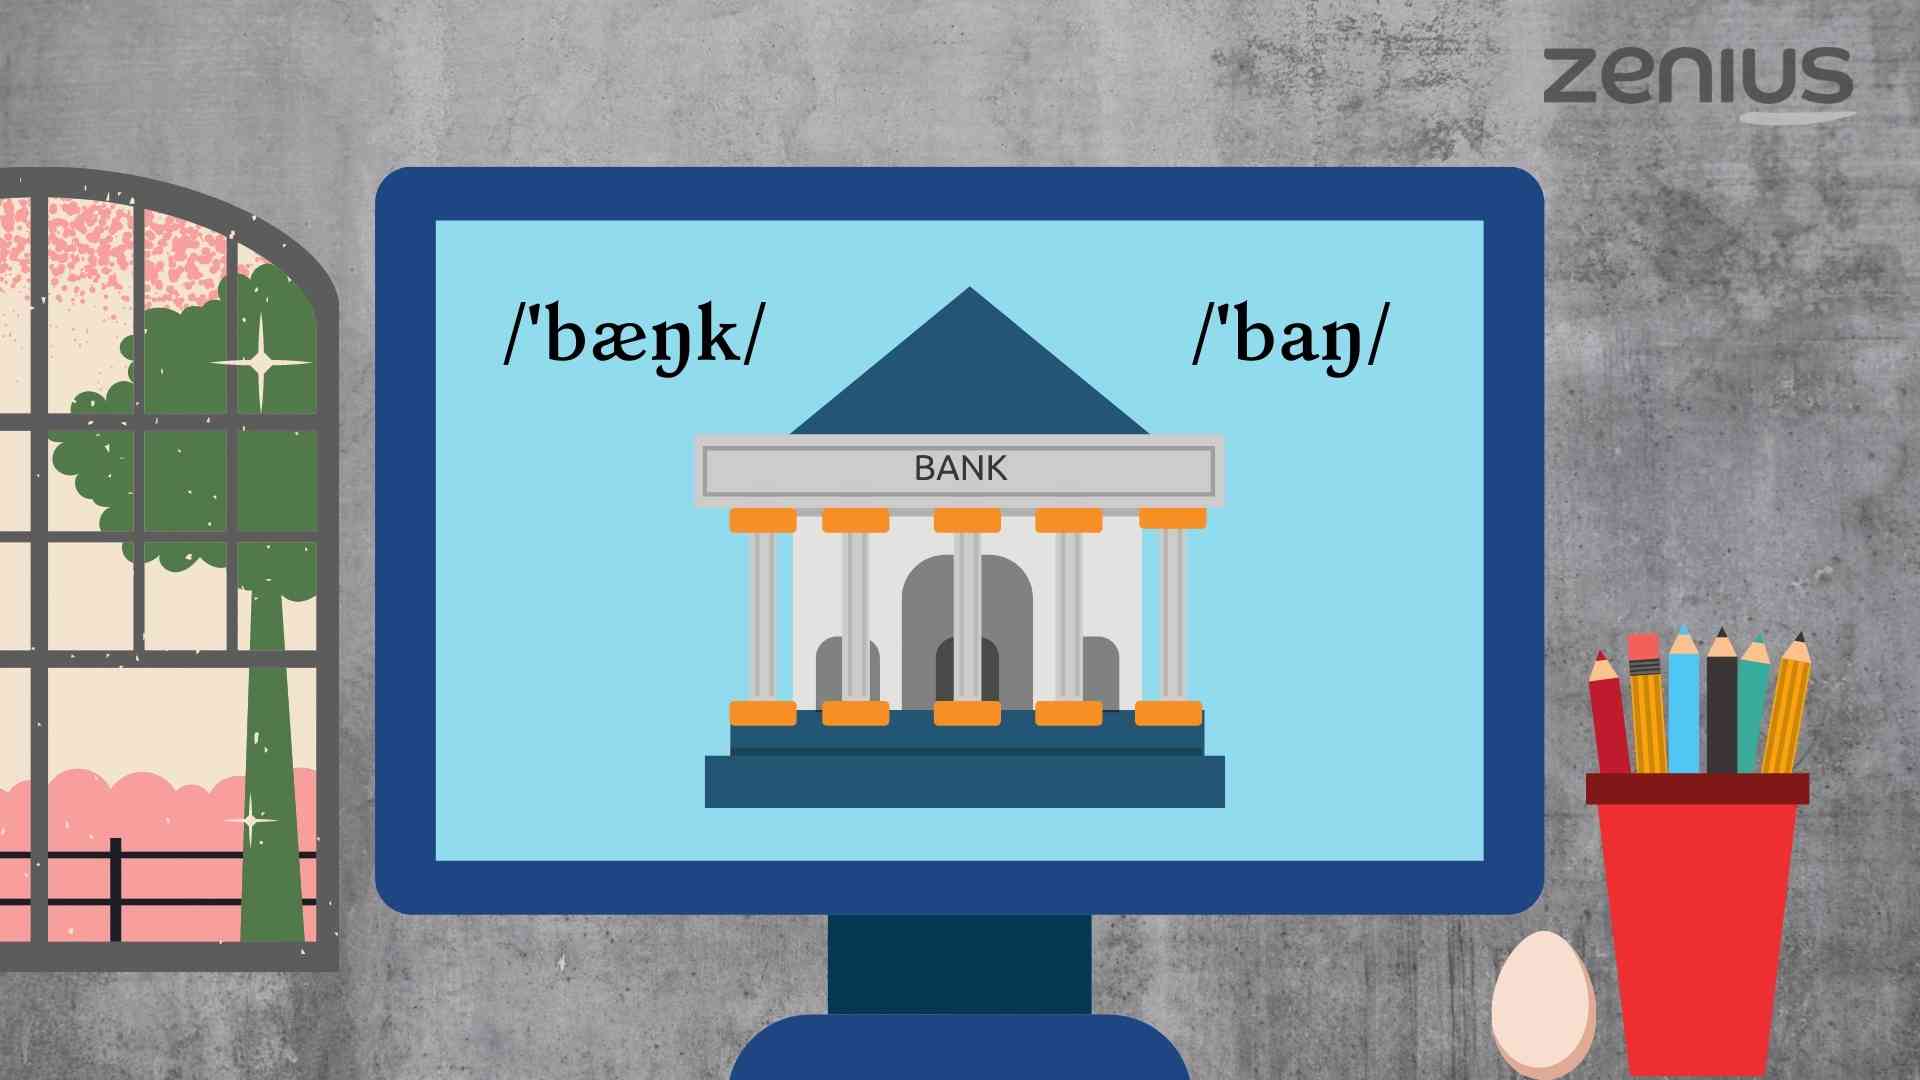 Phonetic Symbol Bank dalam bahasa Inggris dan bahasa Indonesia